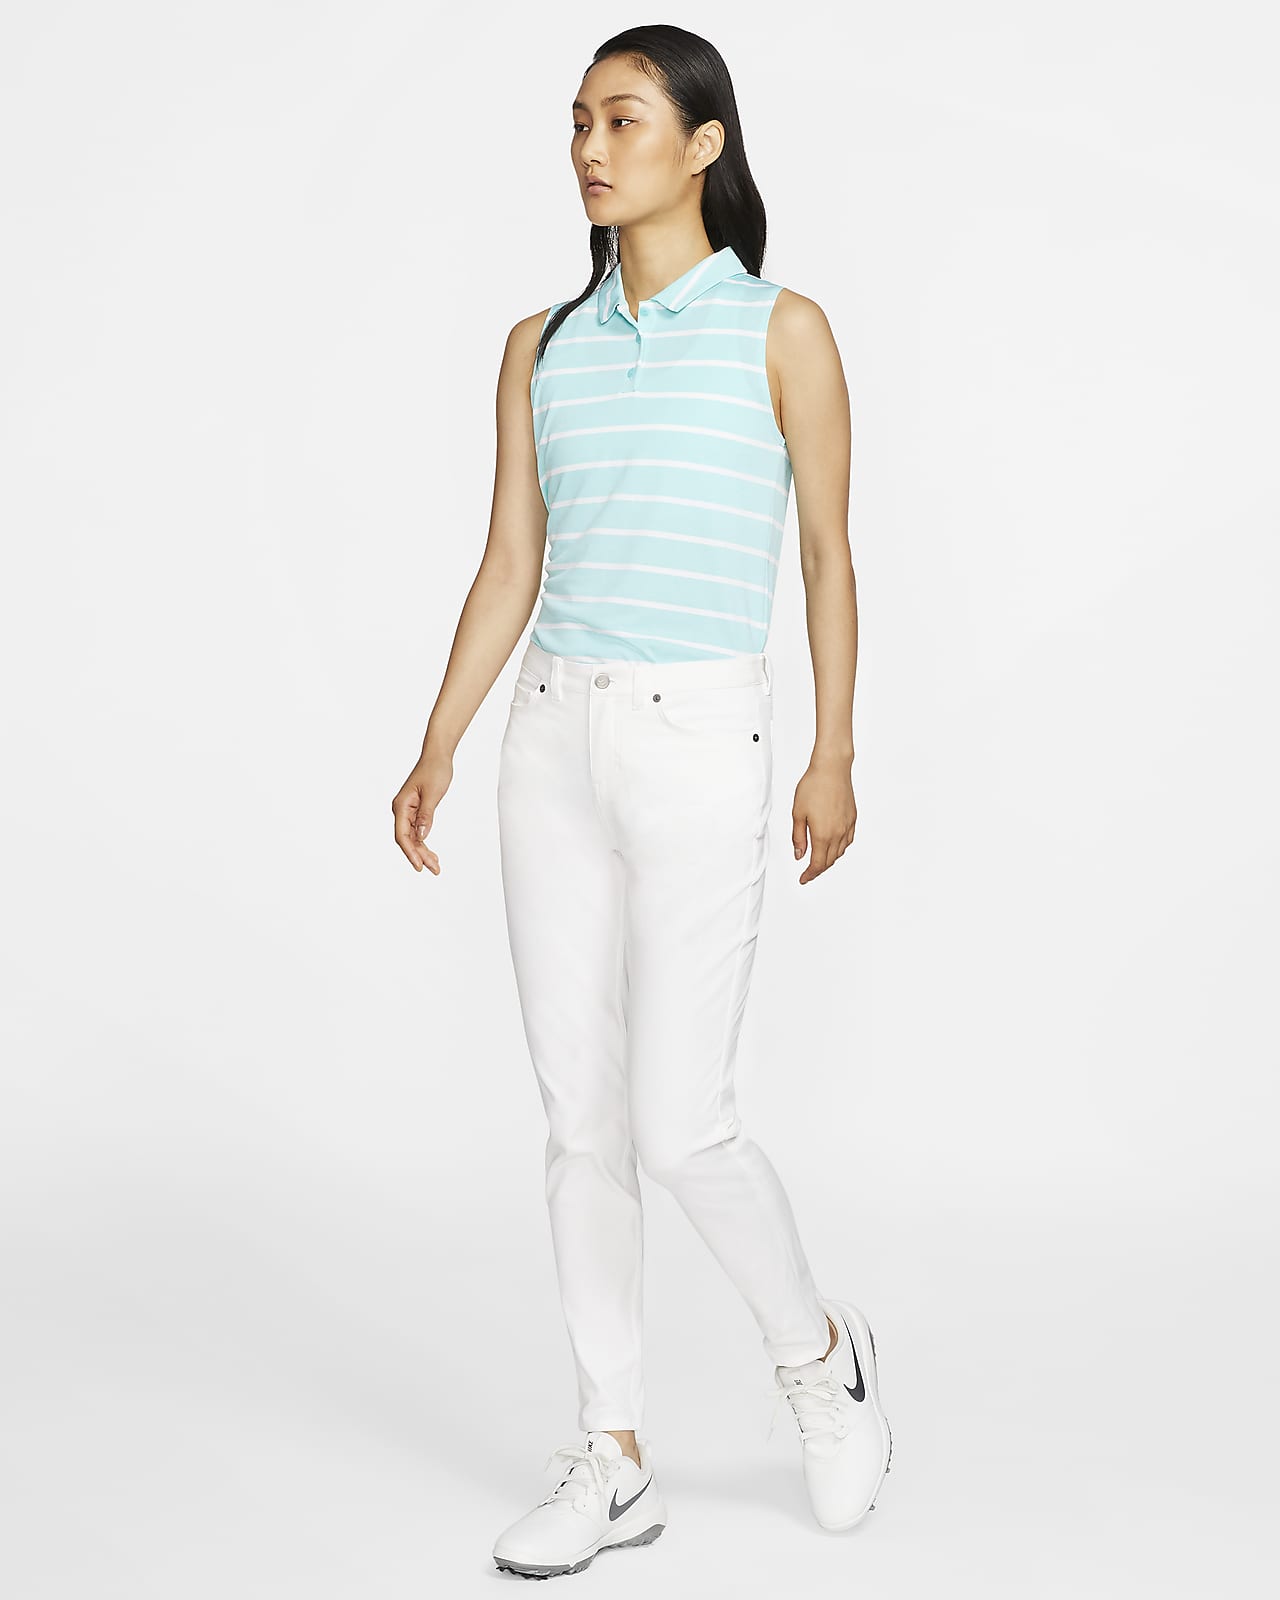 Nike Dri Fit Women's Golf Pants Size Medium Light Khaki EUC